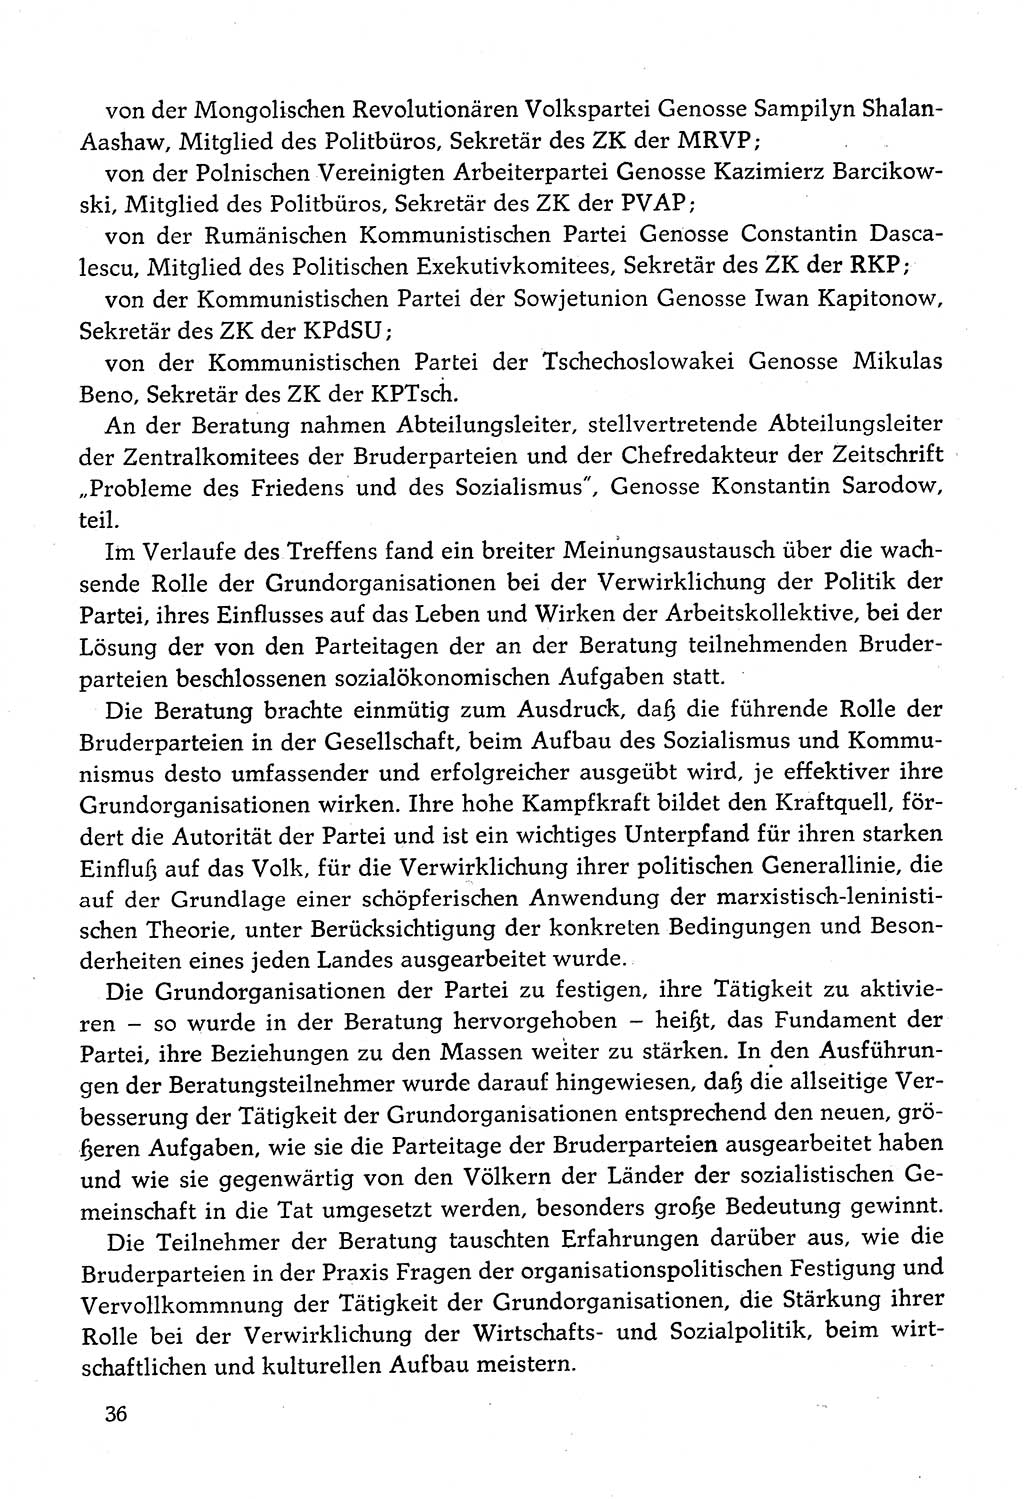 Dokumente der Sozialistischen Einheitspartei Deutschlands (SED) [Deutsche Demokratische Republik (DDR)] 1982-1983, Seite 36 (Dok. SED DDR 1982-1983, S. 36)